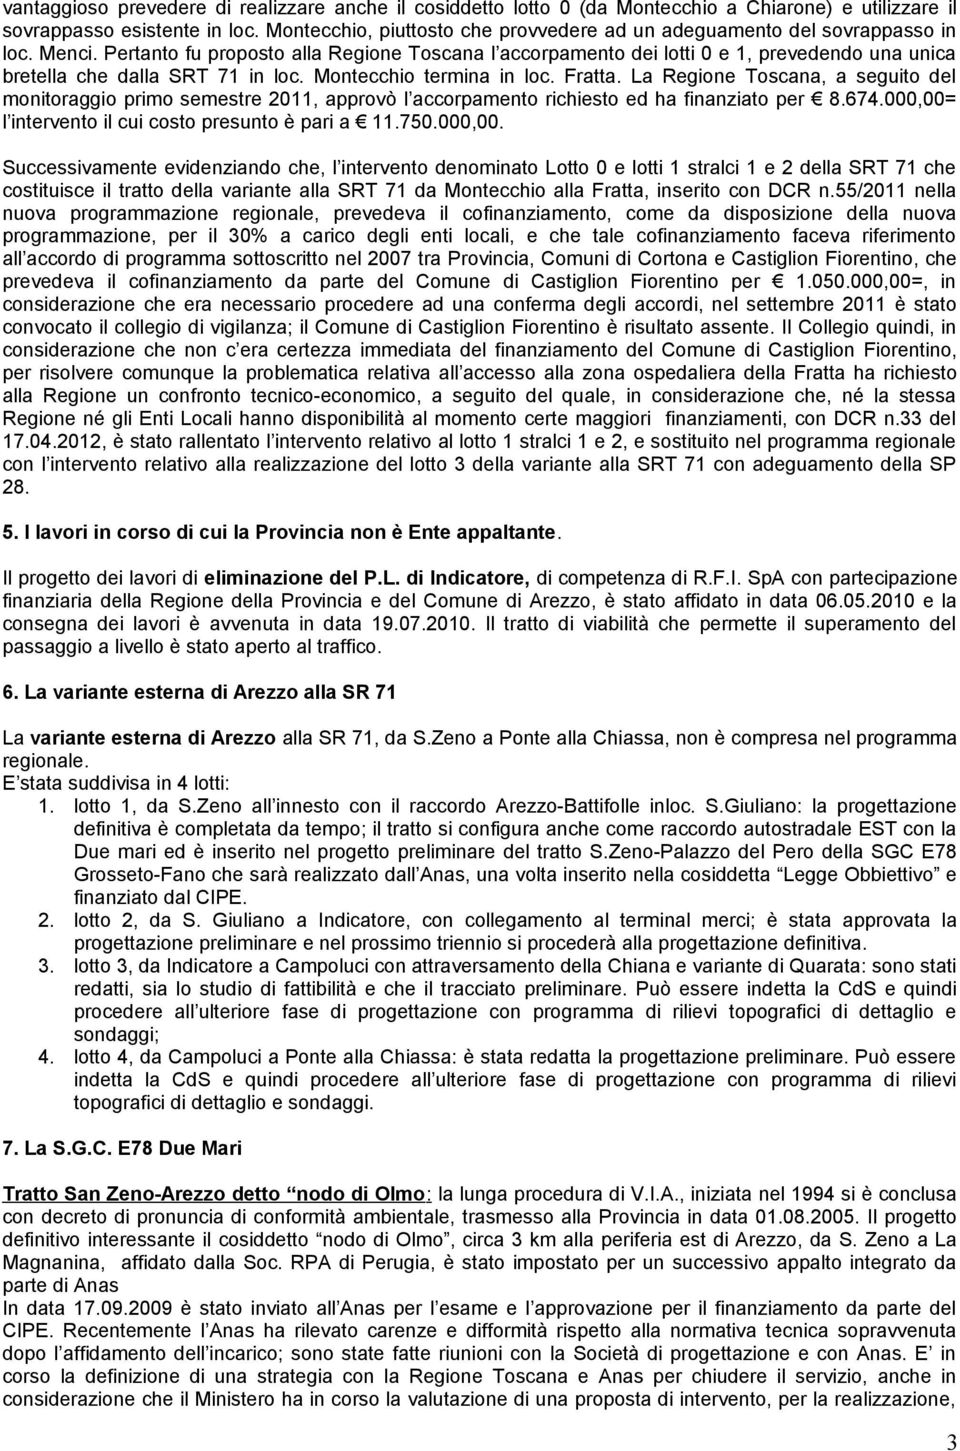 Pertanto fu proposto alla Regione Toscana l accorpamento dei lotti 0 e 1, prevedendo una unica bretella che dalla SRT 71 in loc. Montecchio termina in loc. Fratta.